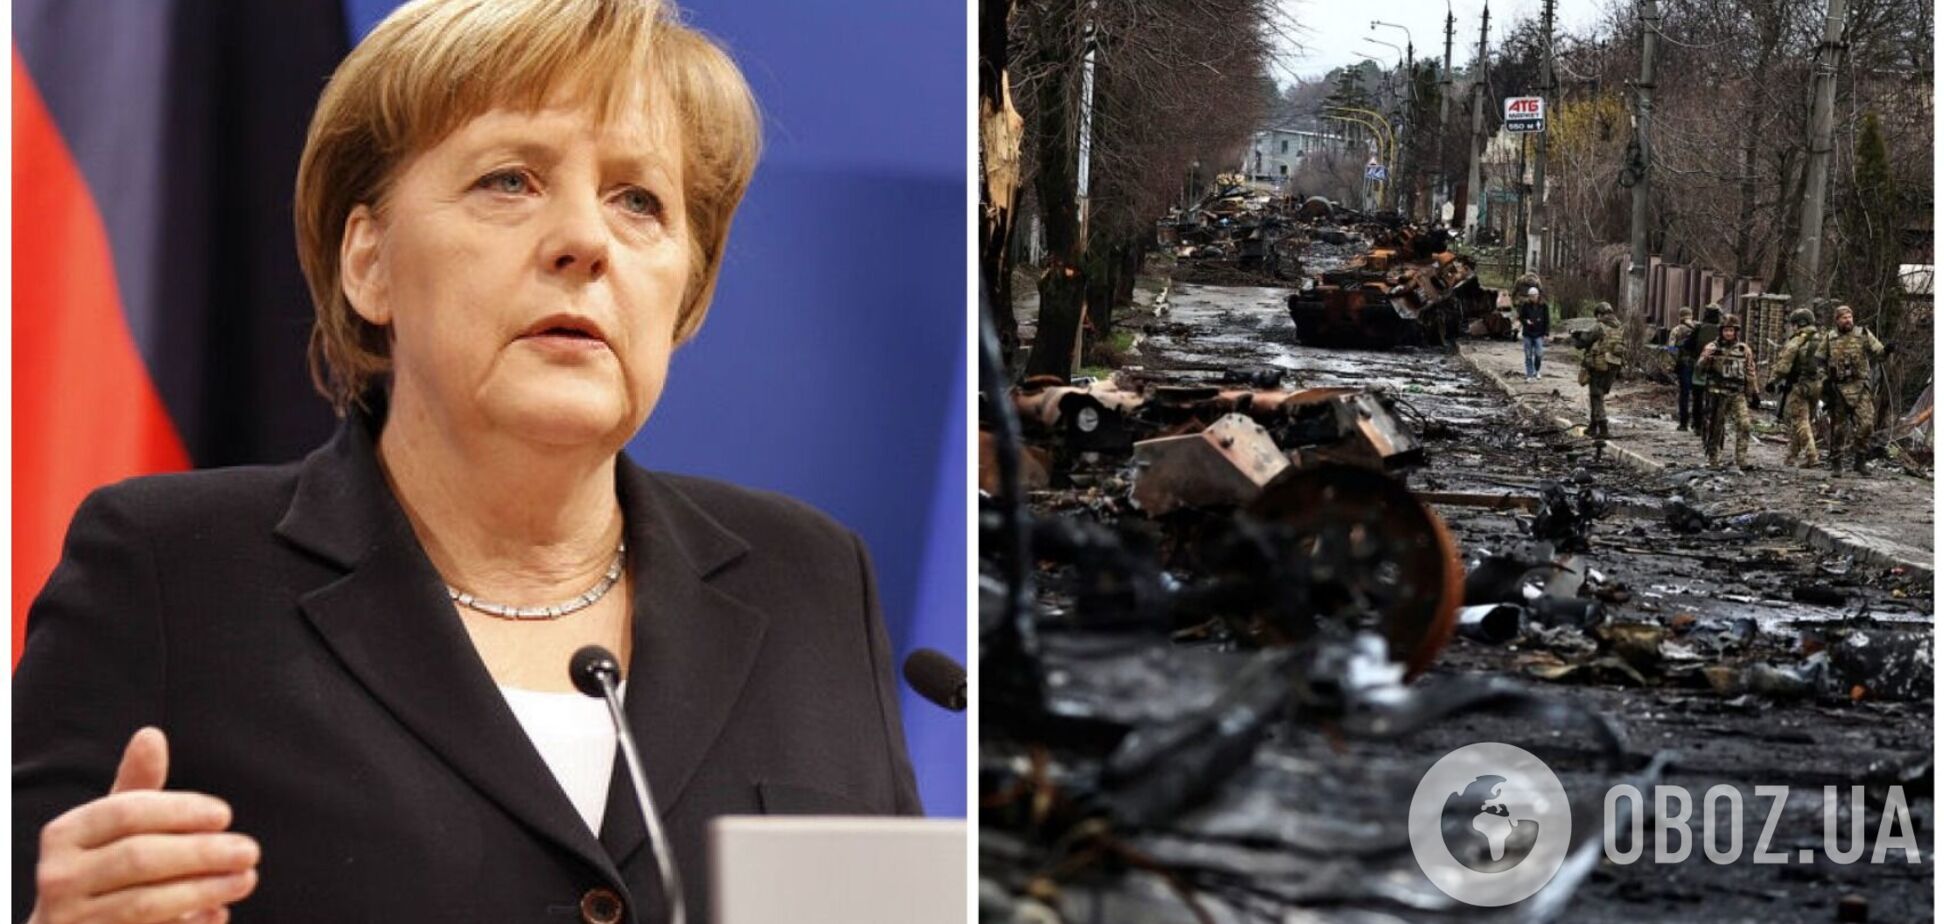 Меркель рассказала, почему вместо поездки в разрушенную Бучу выбрала путешествие в Италию